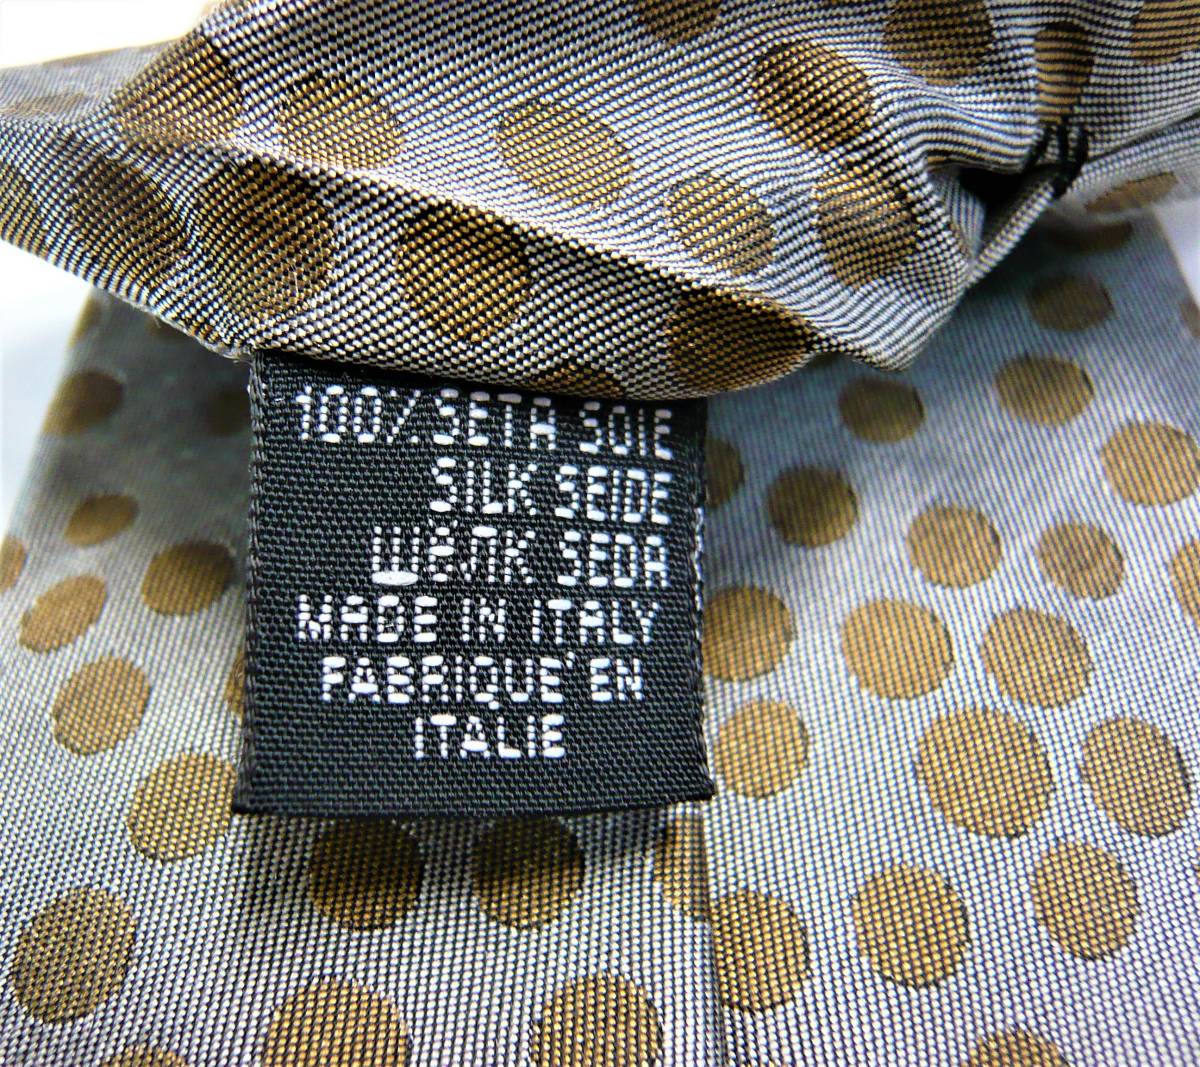  Vivienne галстук 8.5cm 24 новый товар с биркой специальный с футляром в подарок .VIVIENNE WESTWOOD серый * бежевый 